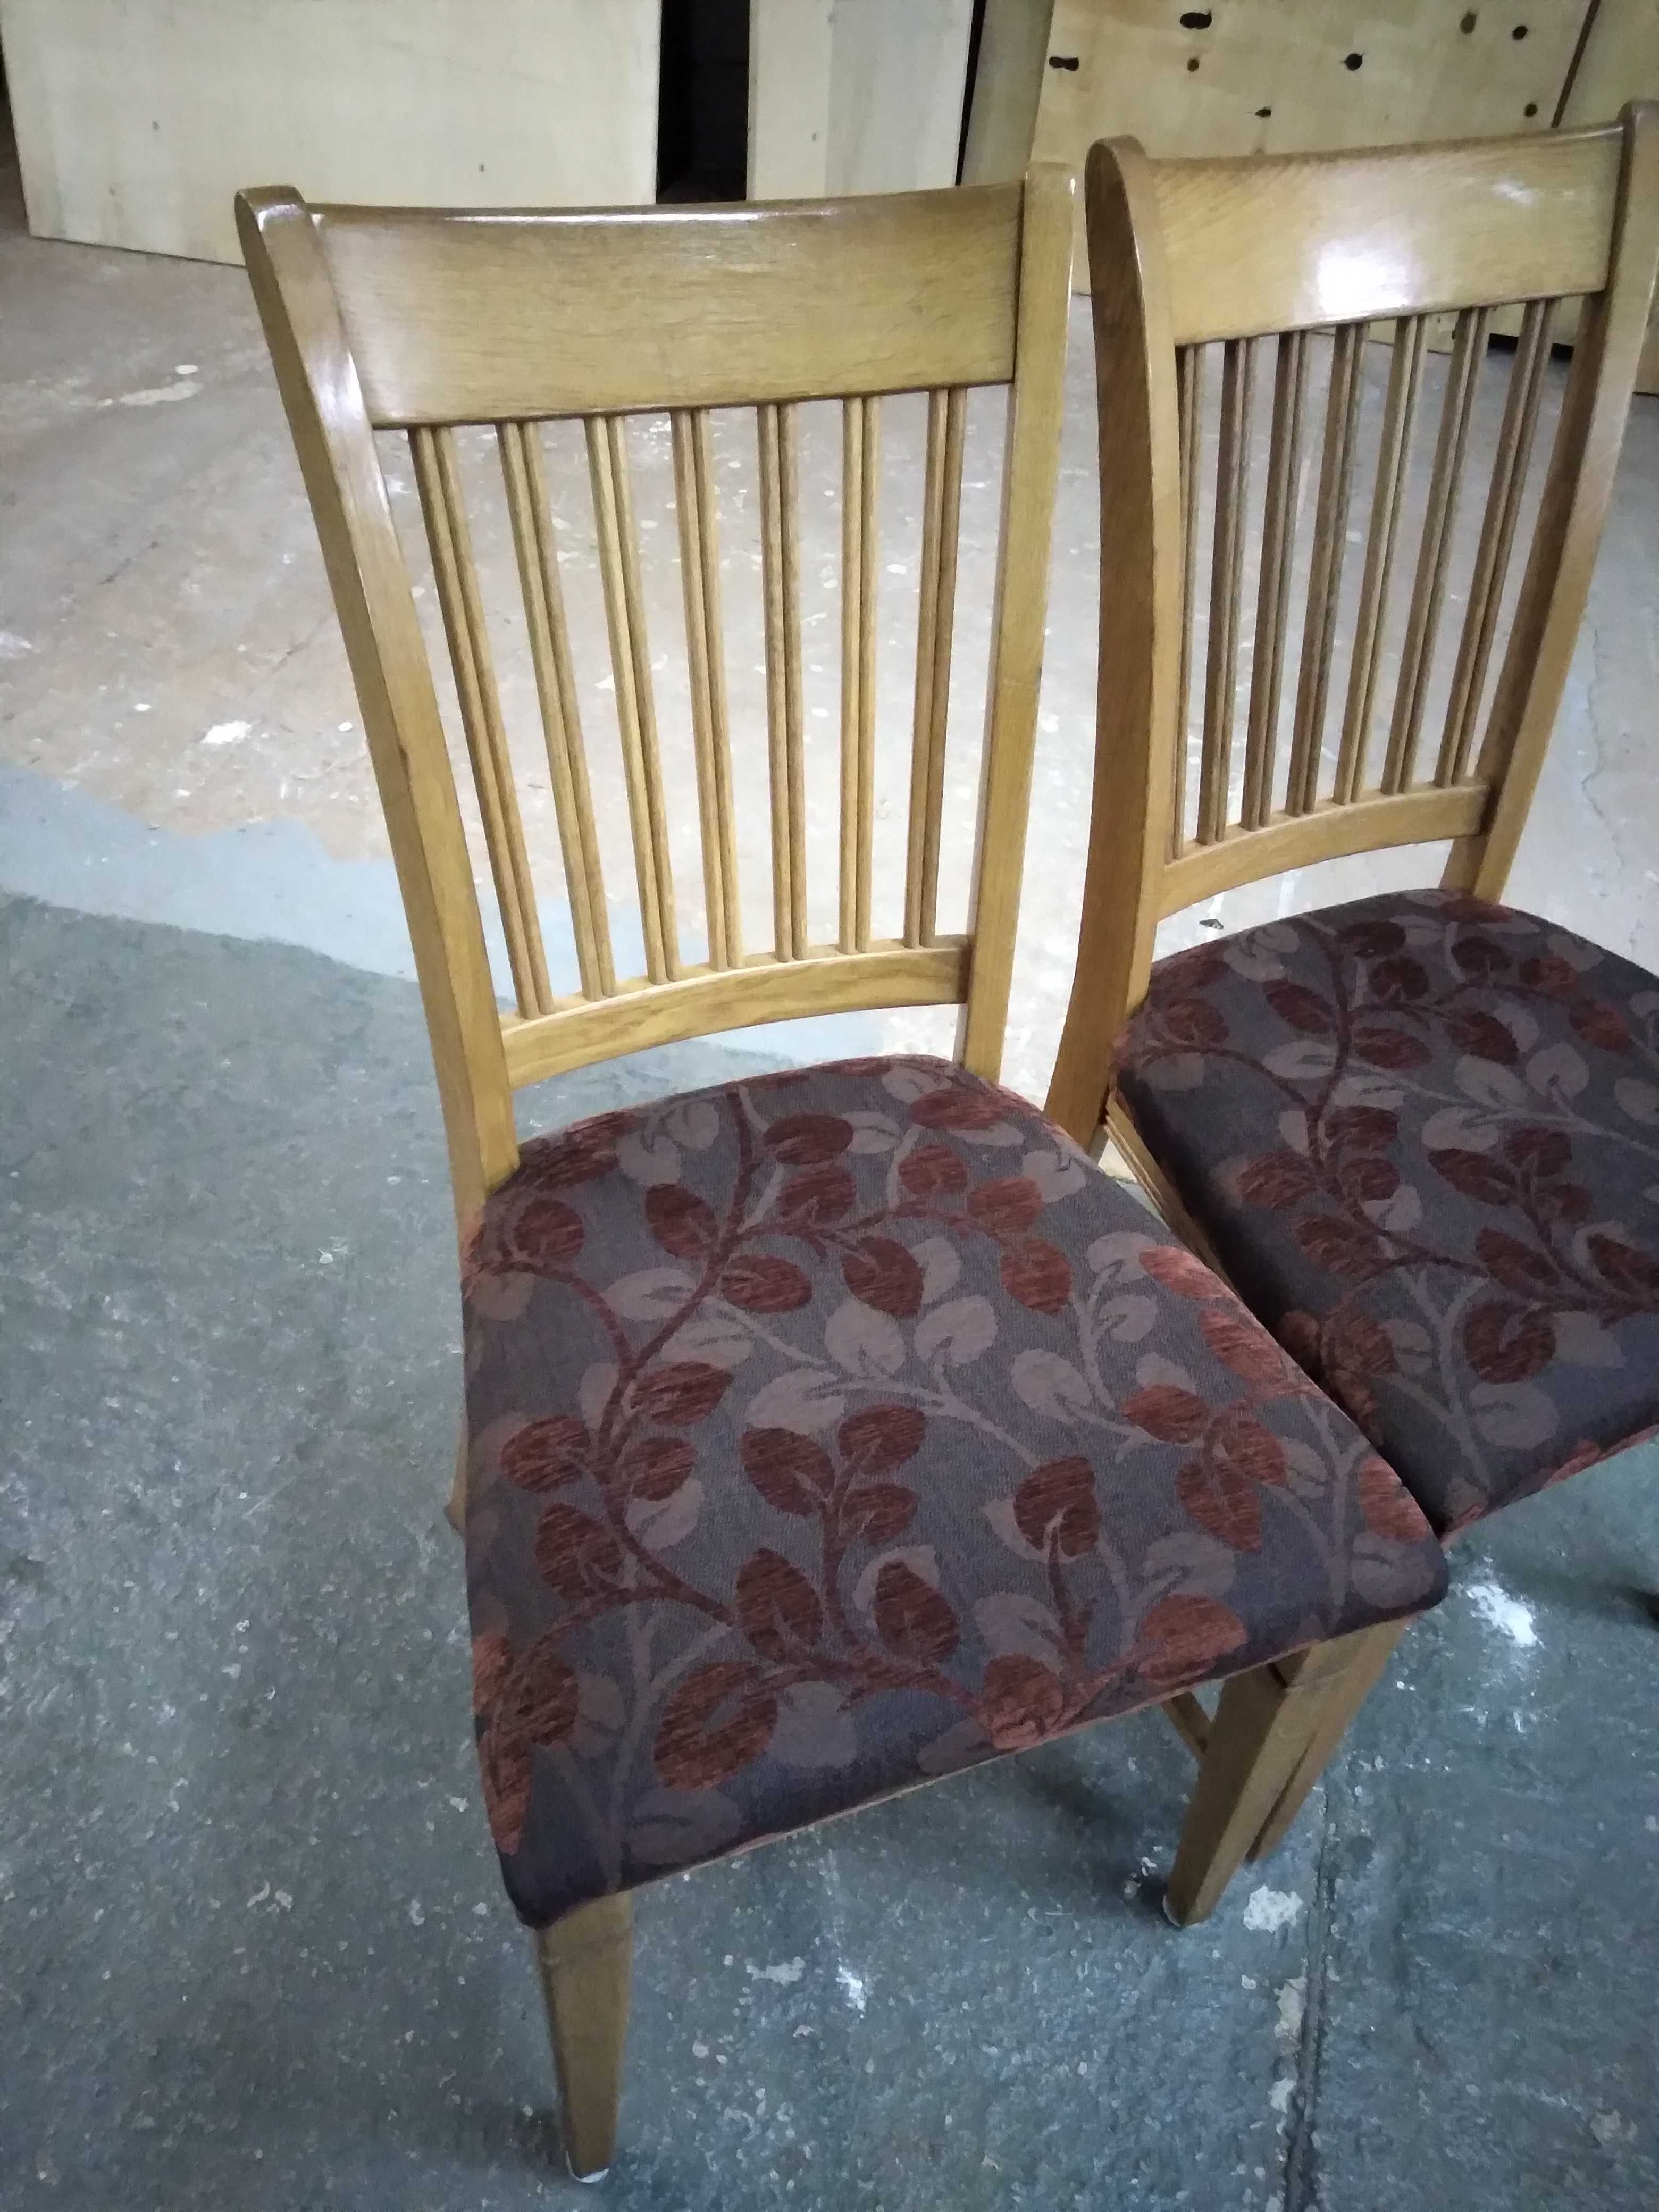 Komplet 4 krzeseł krzesła drewniane dębowe tapicerowane FV DOWÓZ